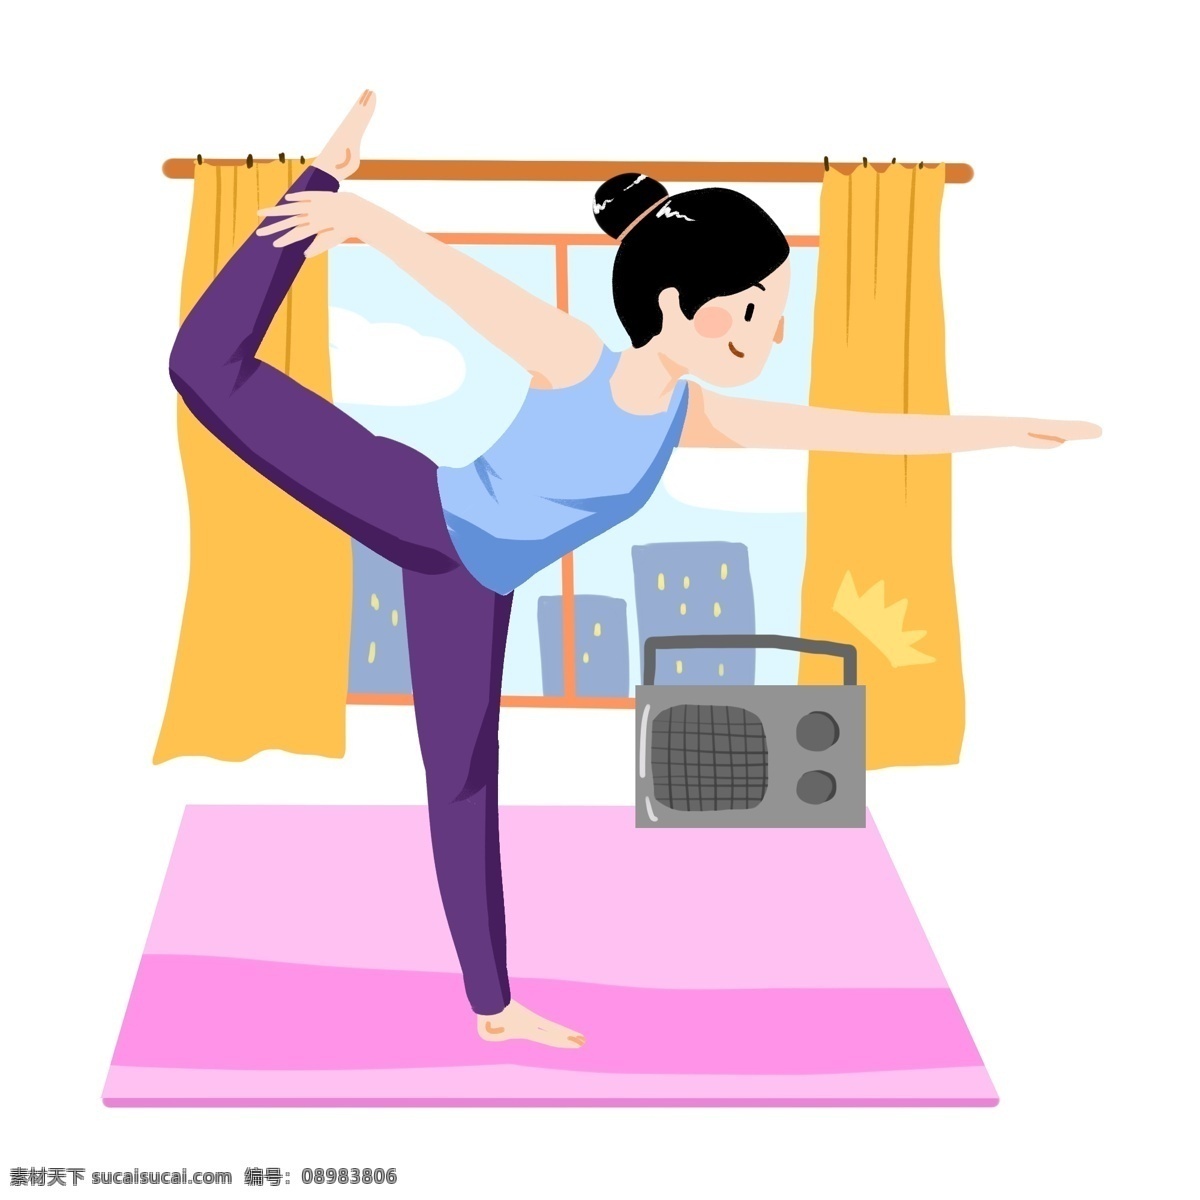 音乐 瑜伽 女孩 插画 练瑜伽的女孩 听音乐 紫色的瑜伽垫 黄色的窗帘 室内瑜伽 锻炼身体 健身女孩插画